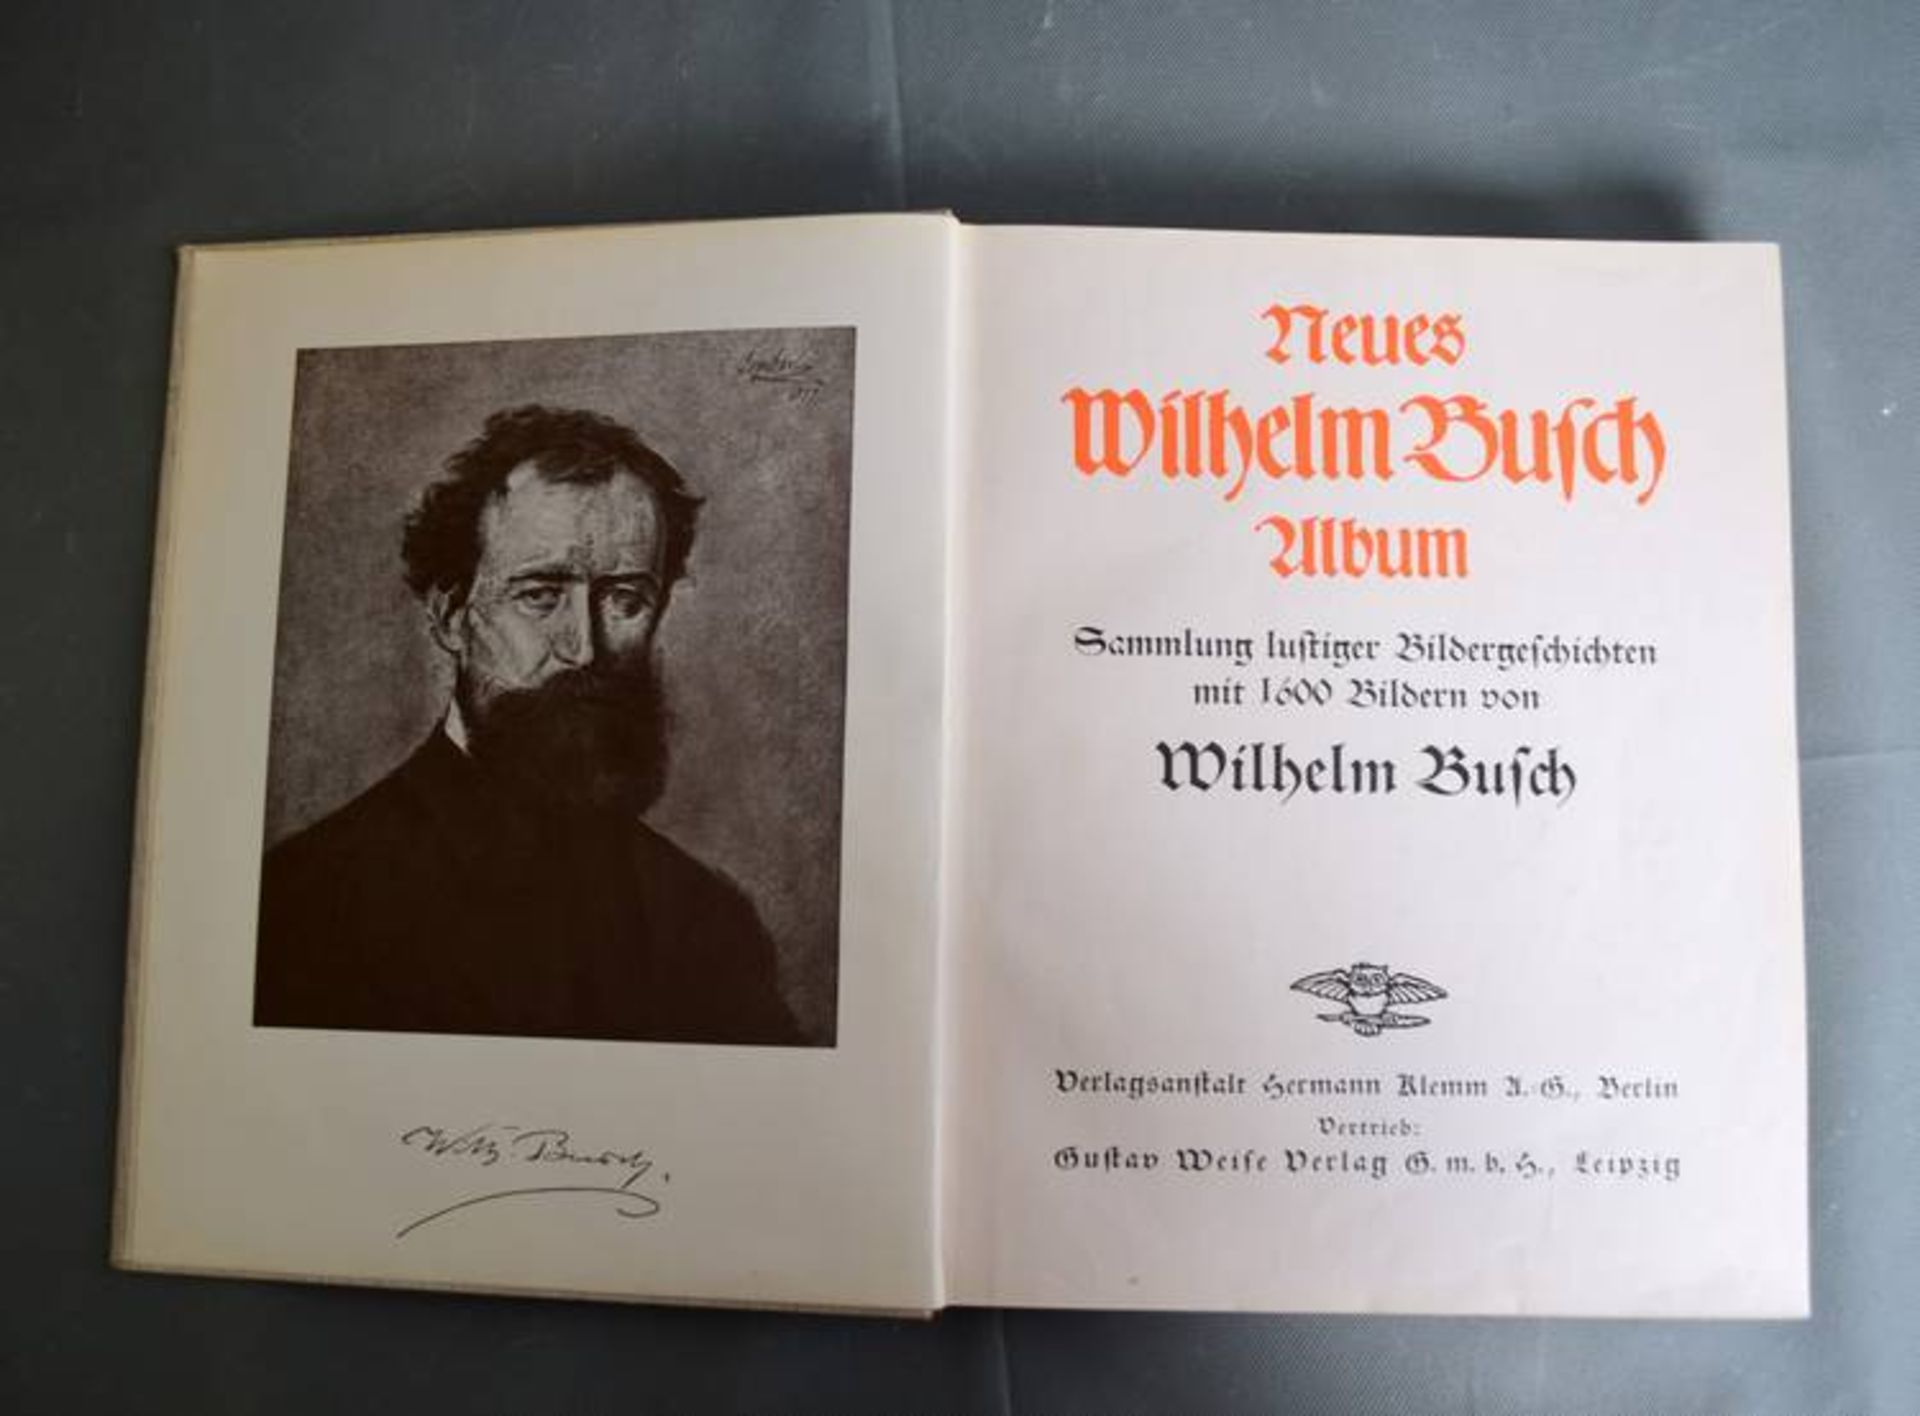 Neues Wilhelm Busch Album